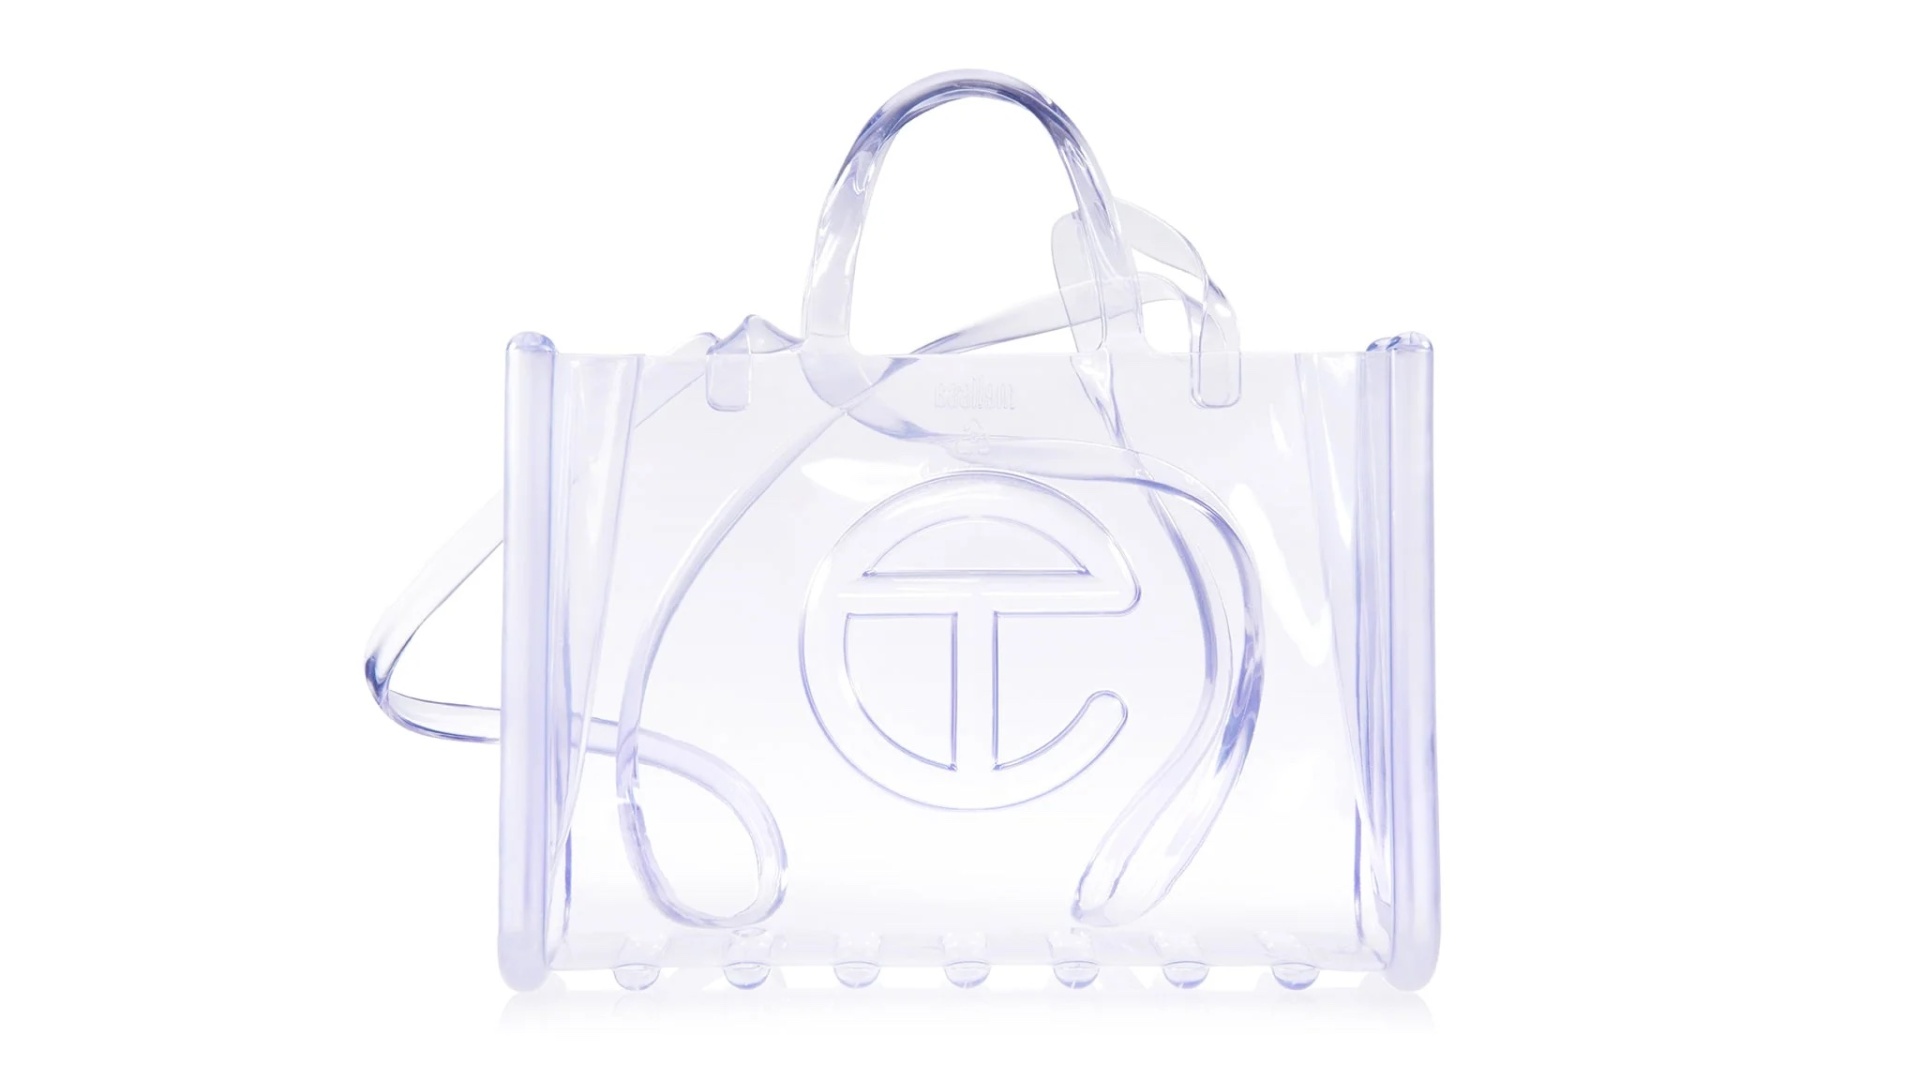 Louis Vuitton Clear Handbag